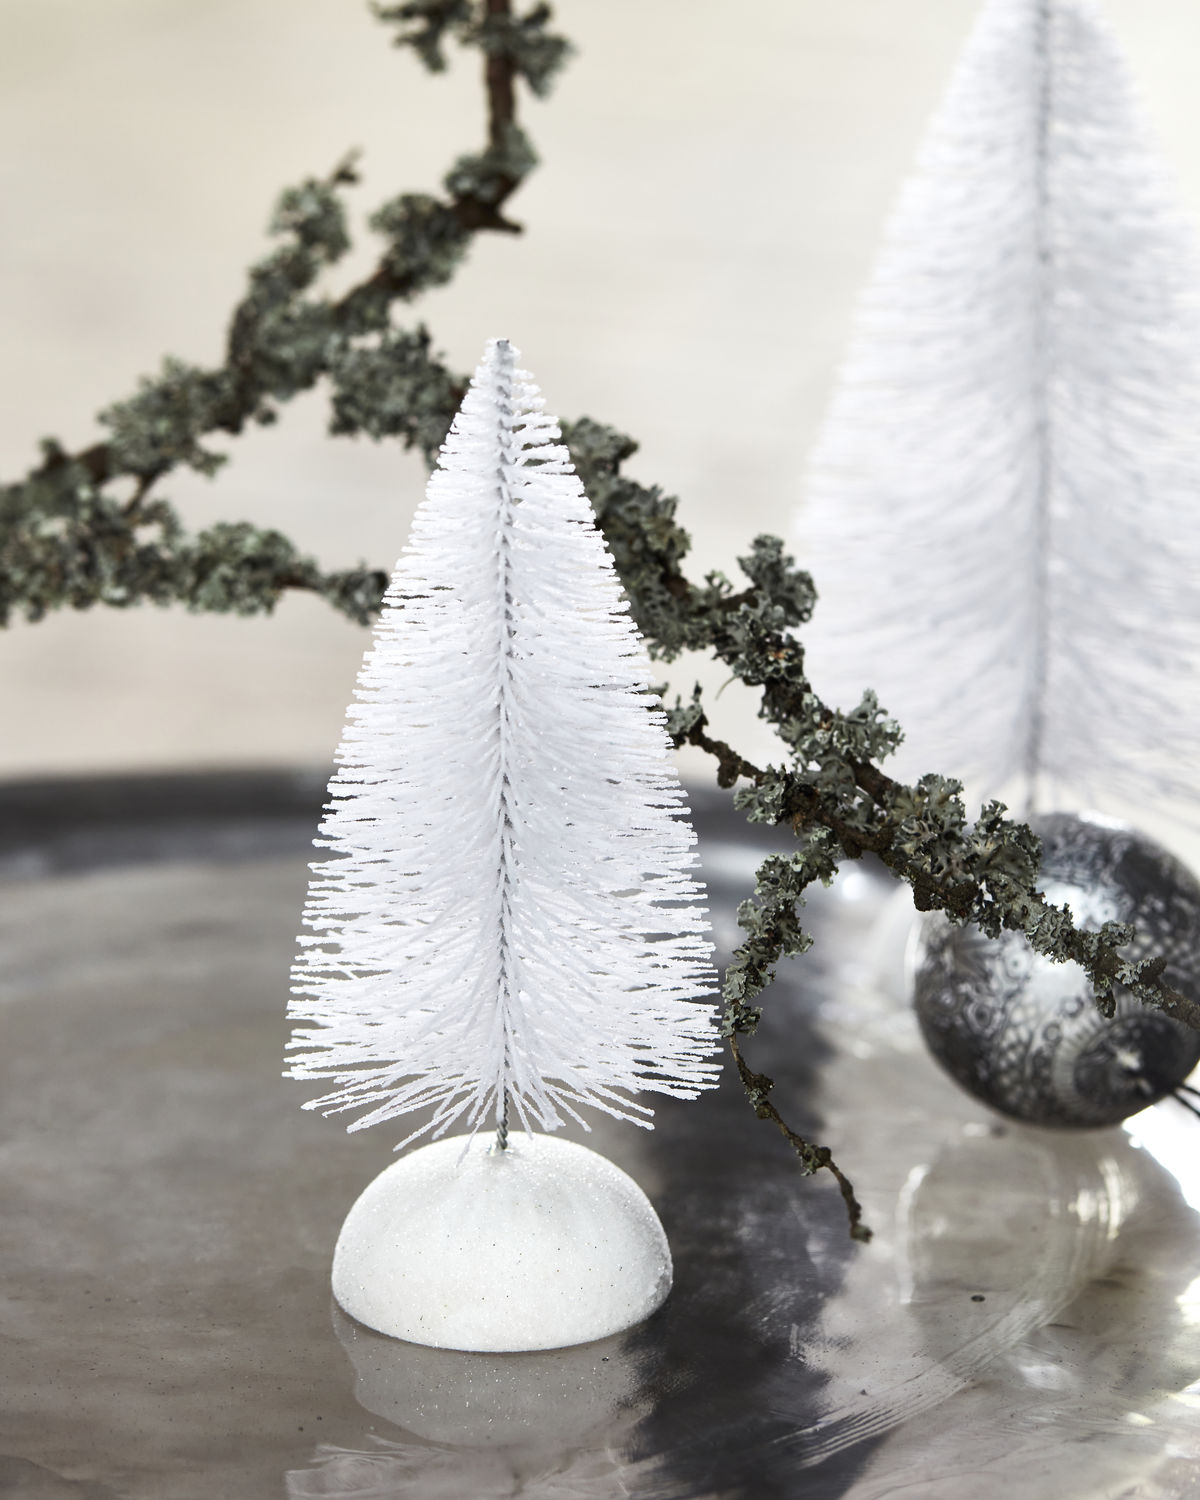 Juletræ, Frost, Hvid H17 cm*